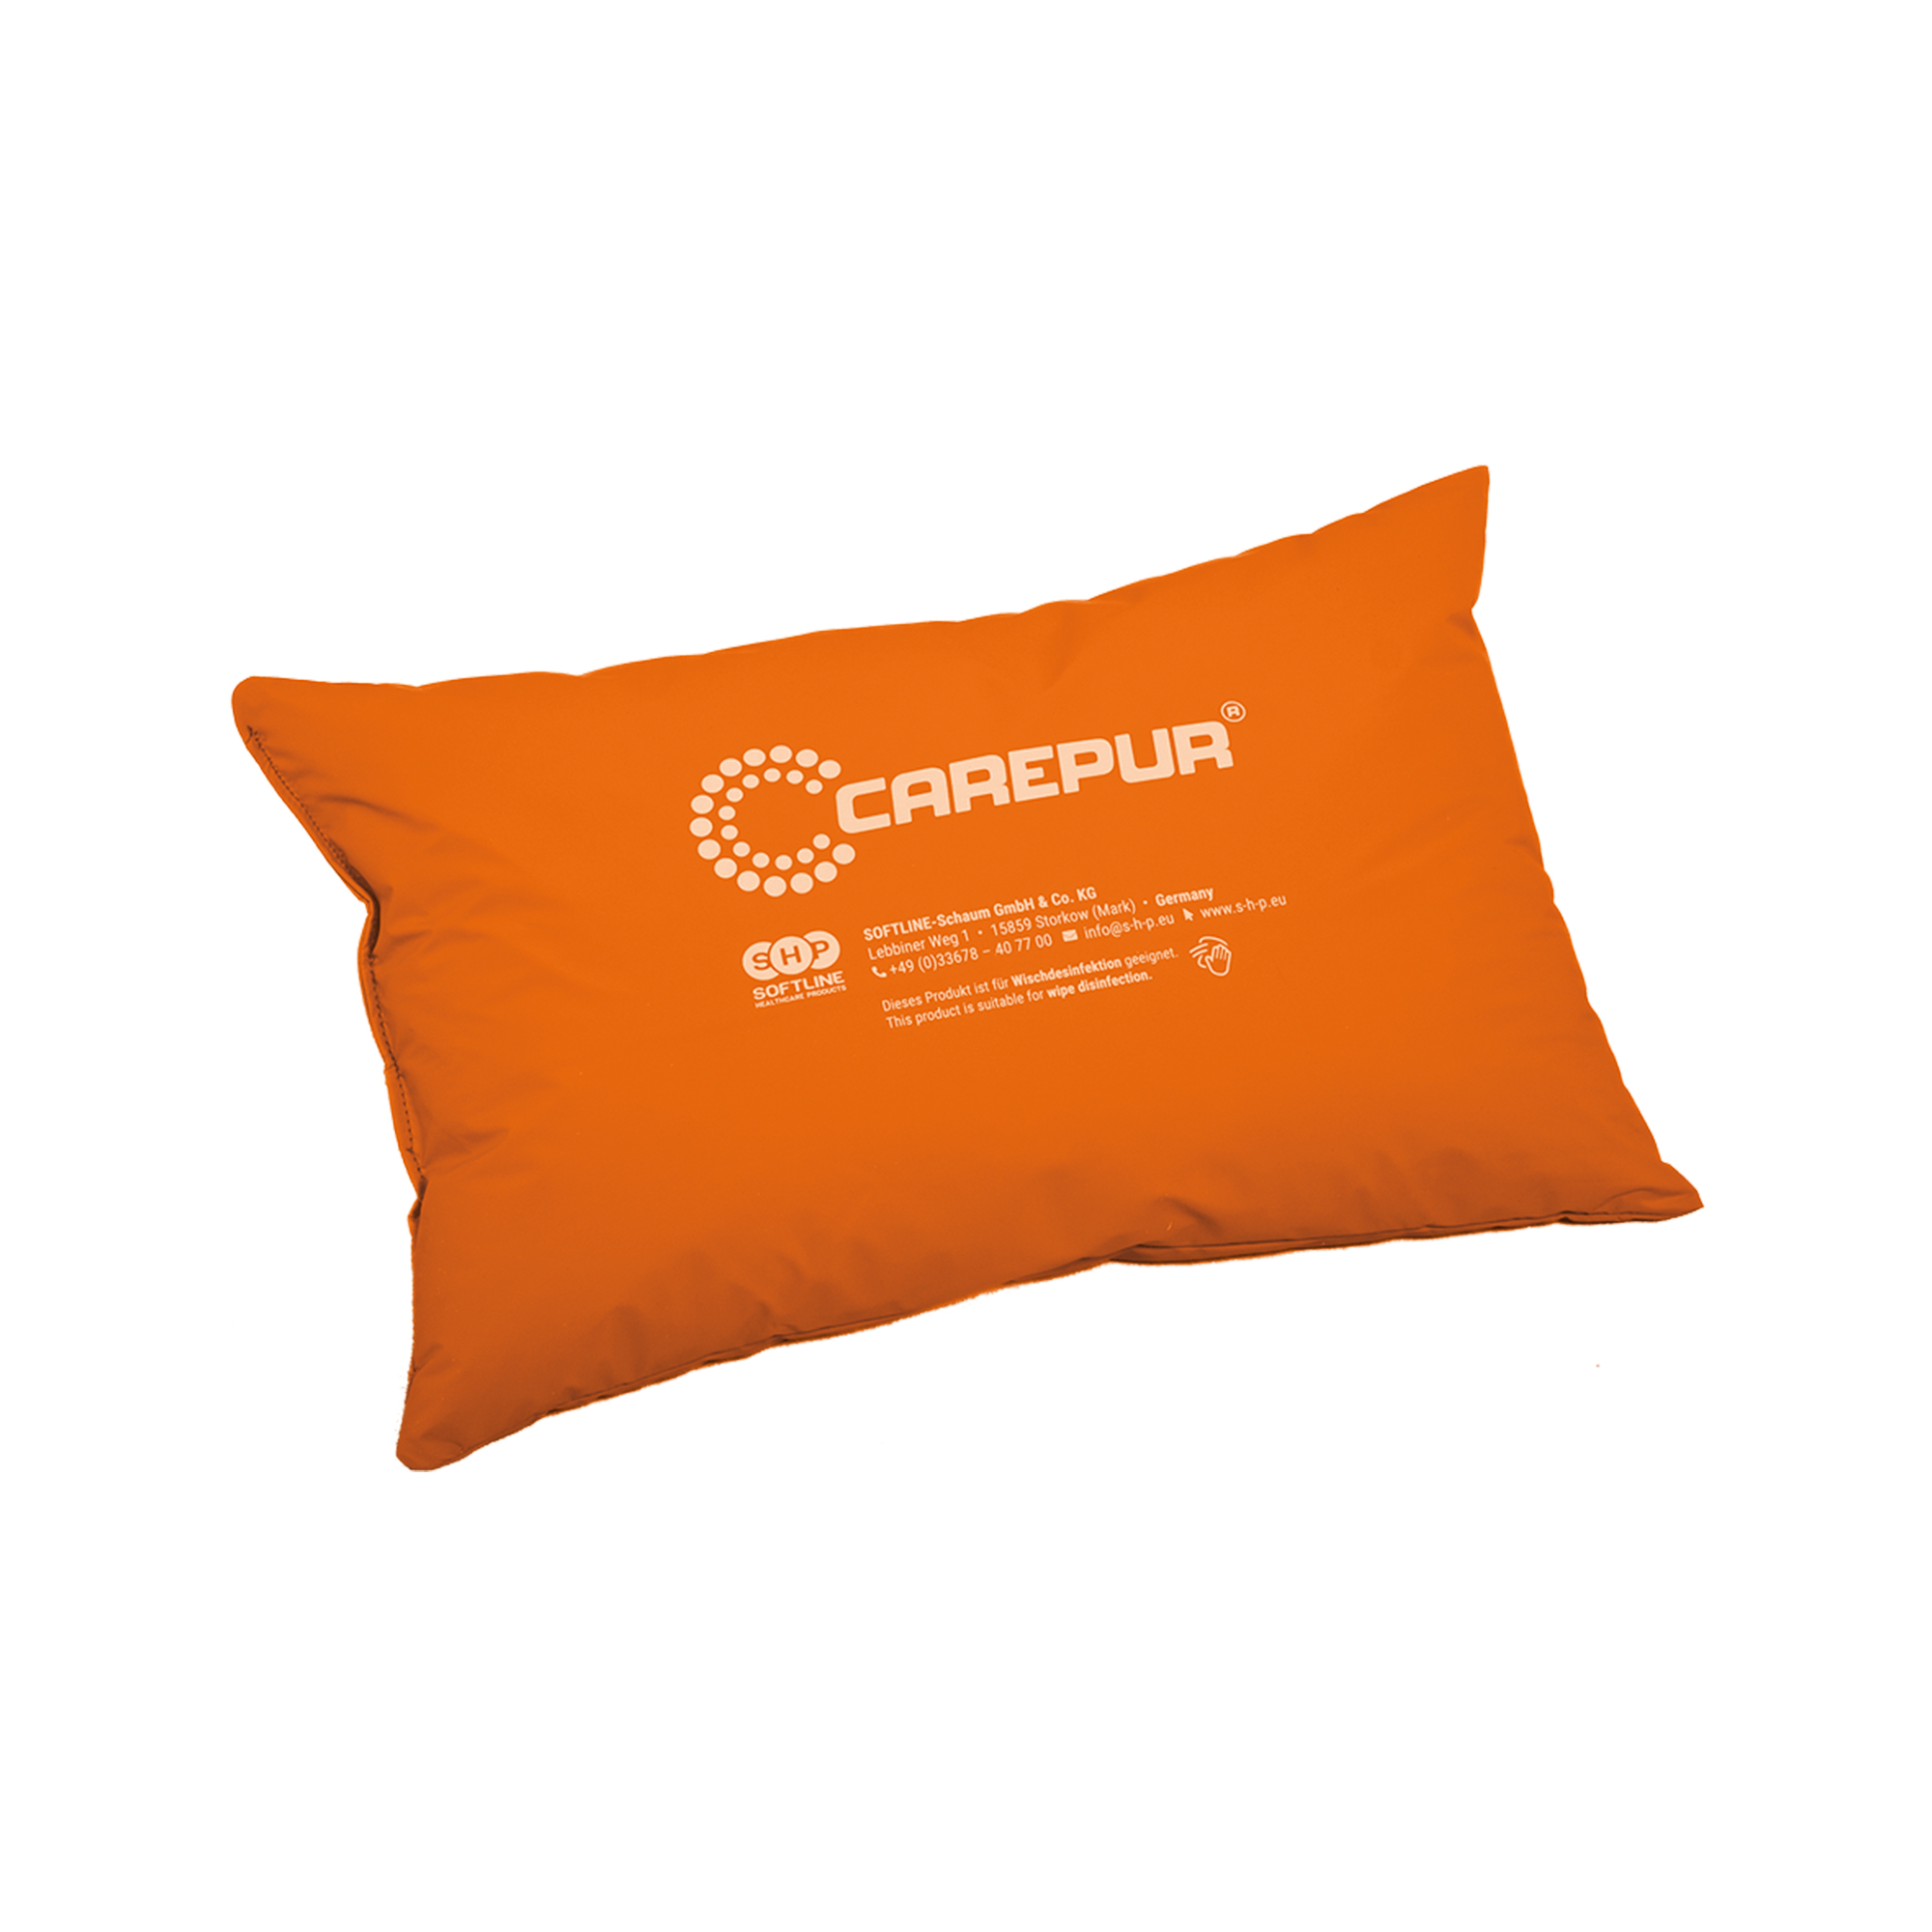 SHP CAREPUR Universalkissen S, orange, 45 x 30 cm